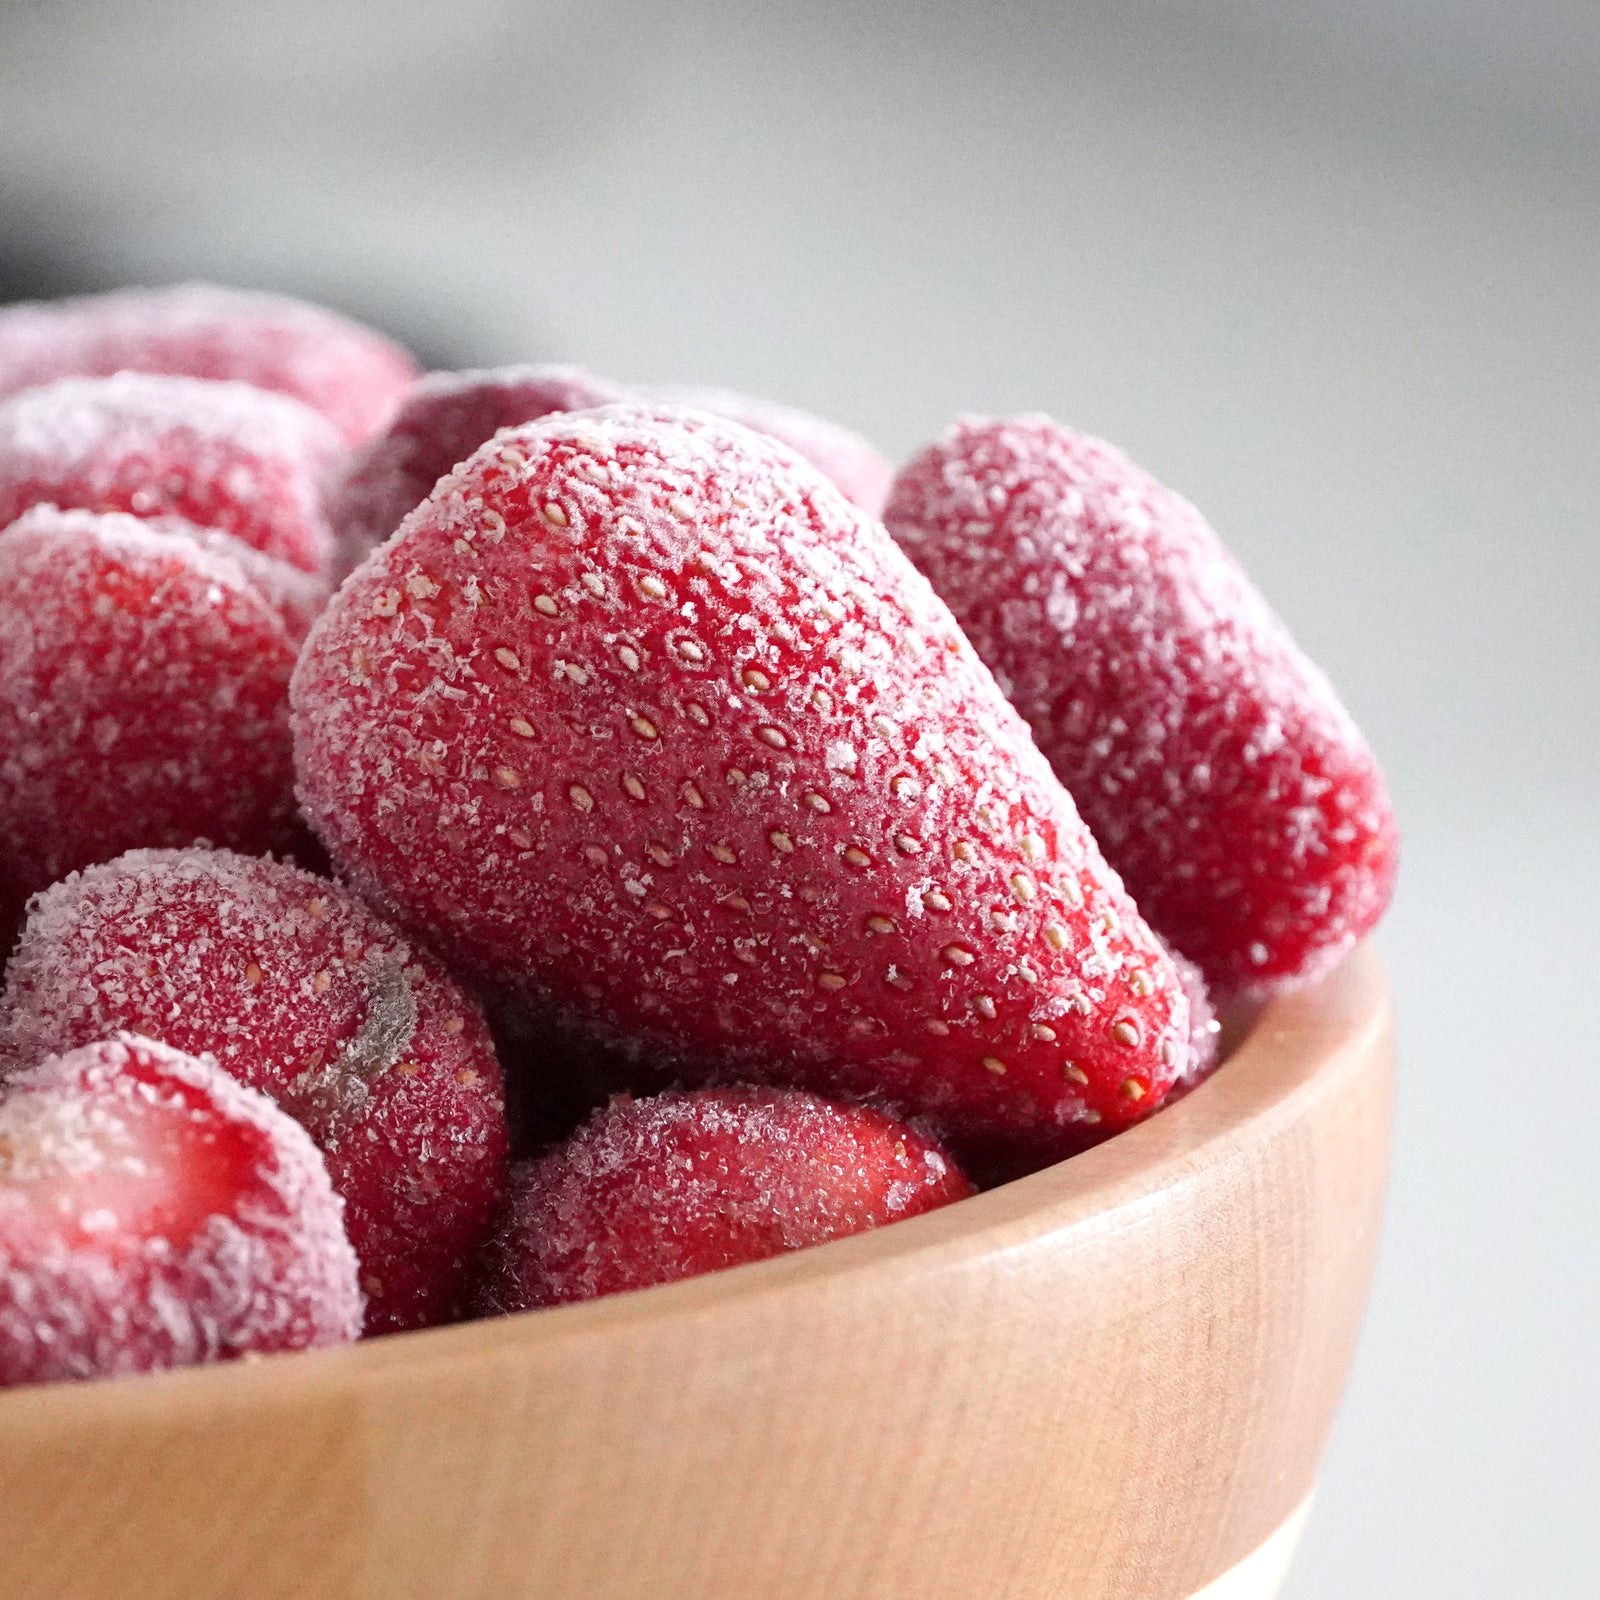 有機 JAS オーガニック 冷凍 ストロベリー いちご 苺 トルコ産 化学